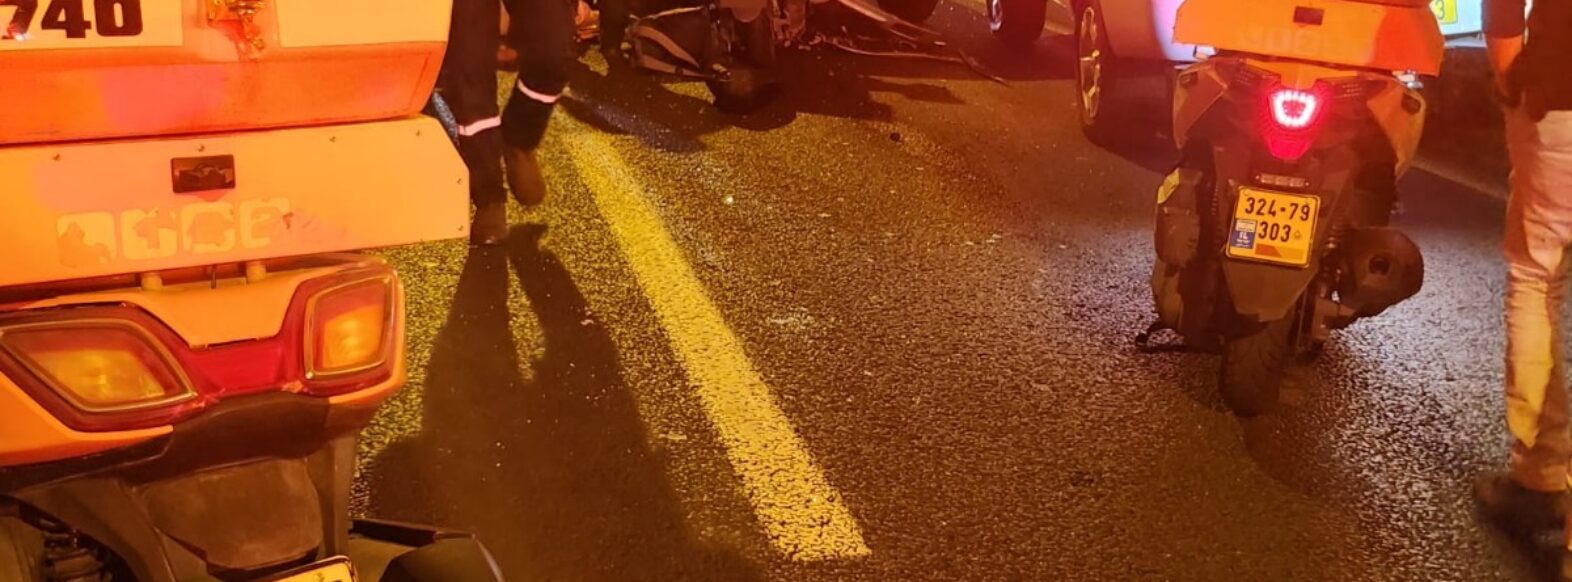 רוכב אופנוע נהרג בתאונת דרכים במנהרות הכרמל